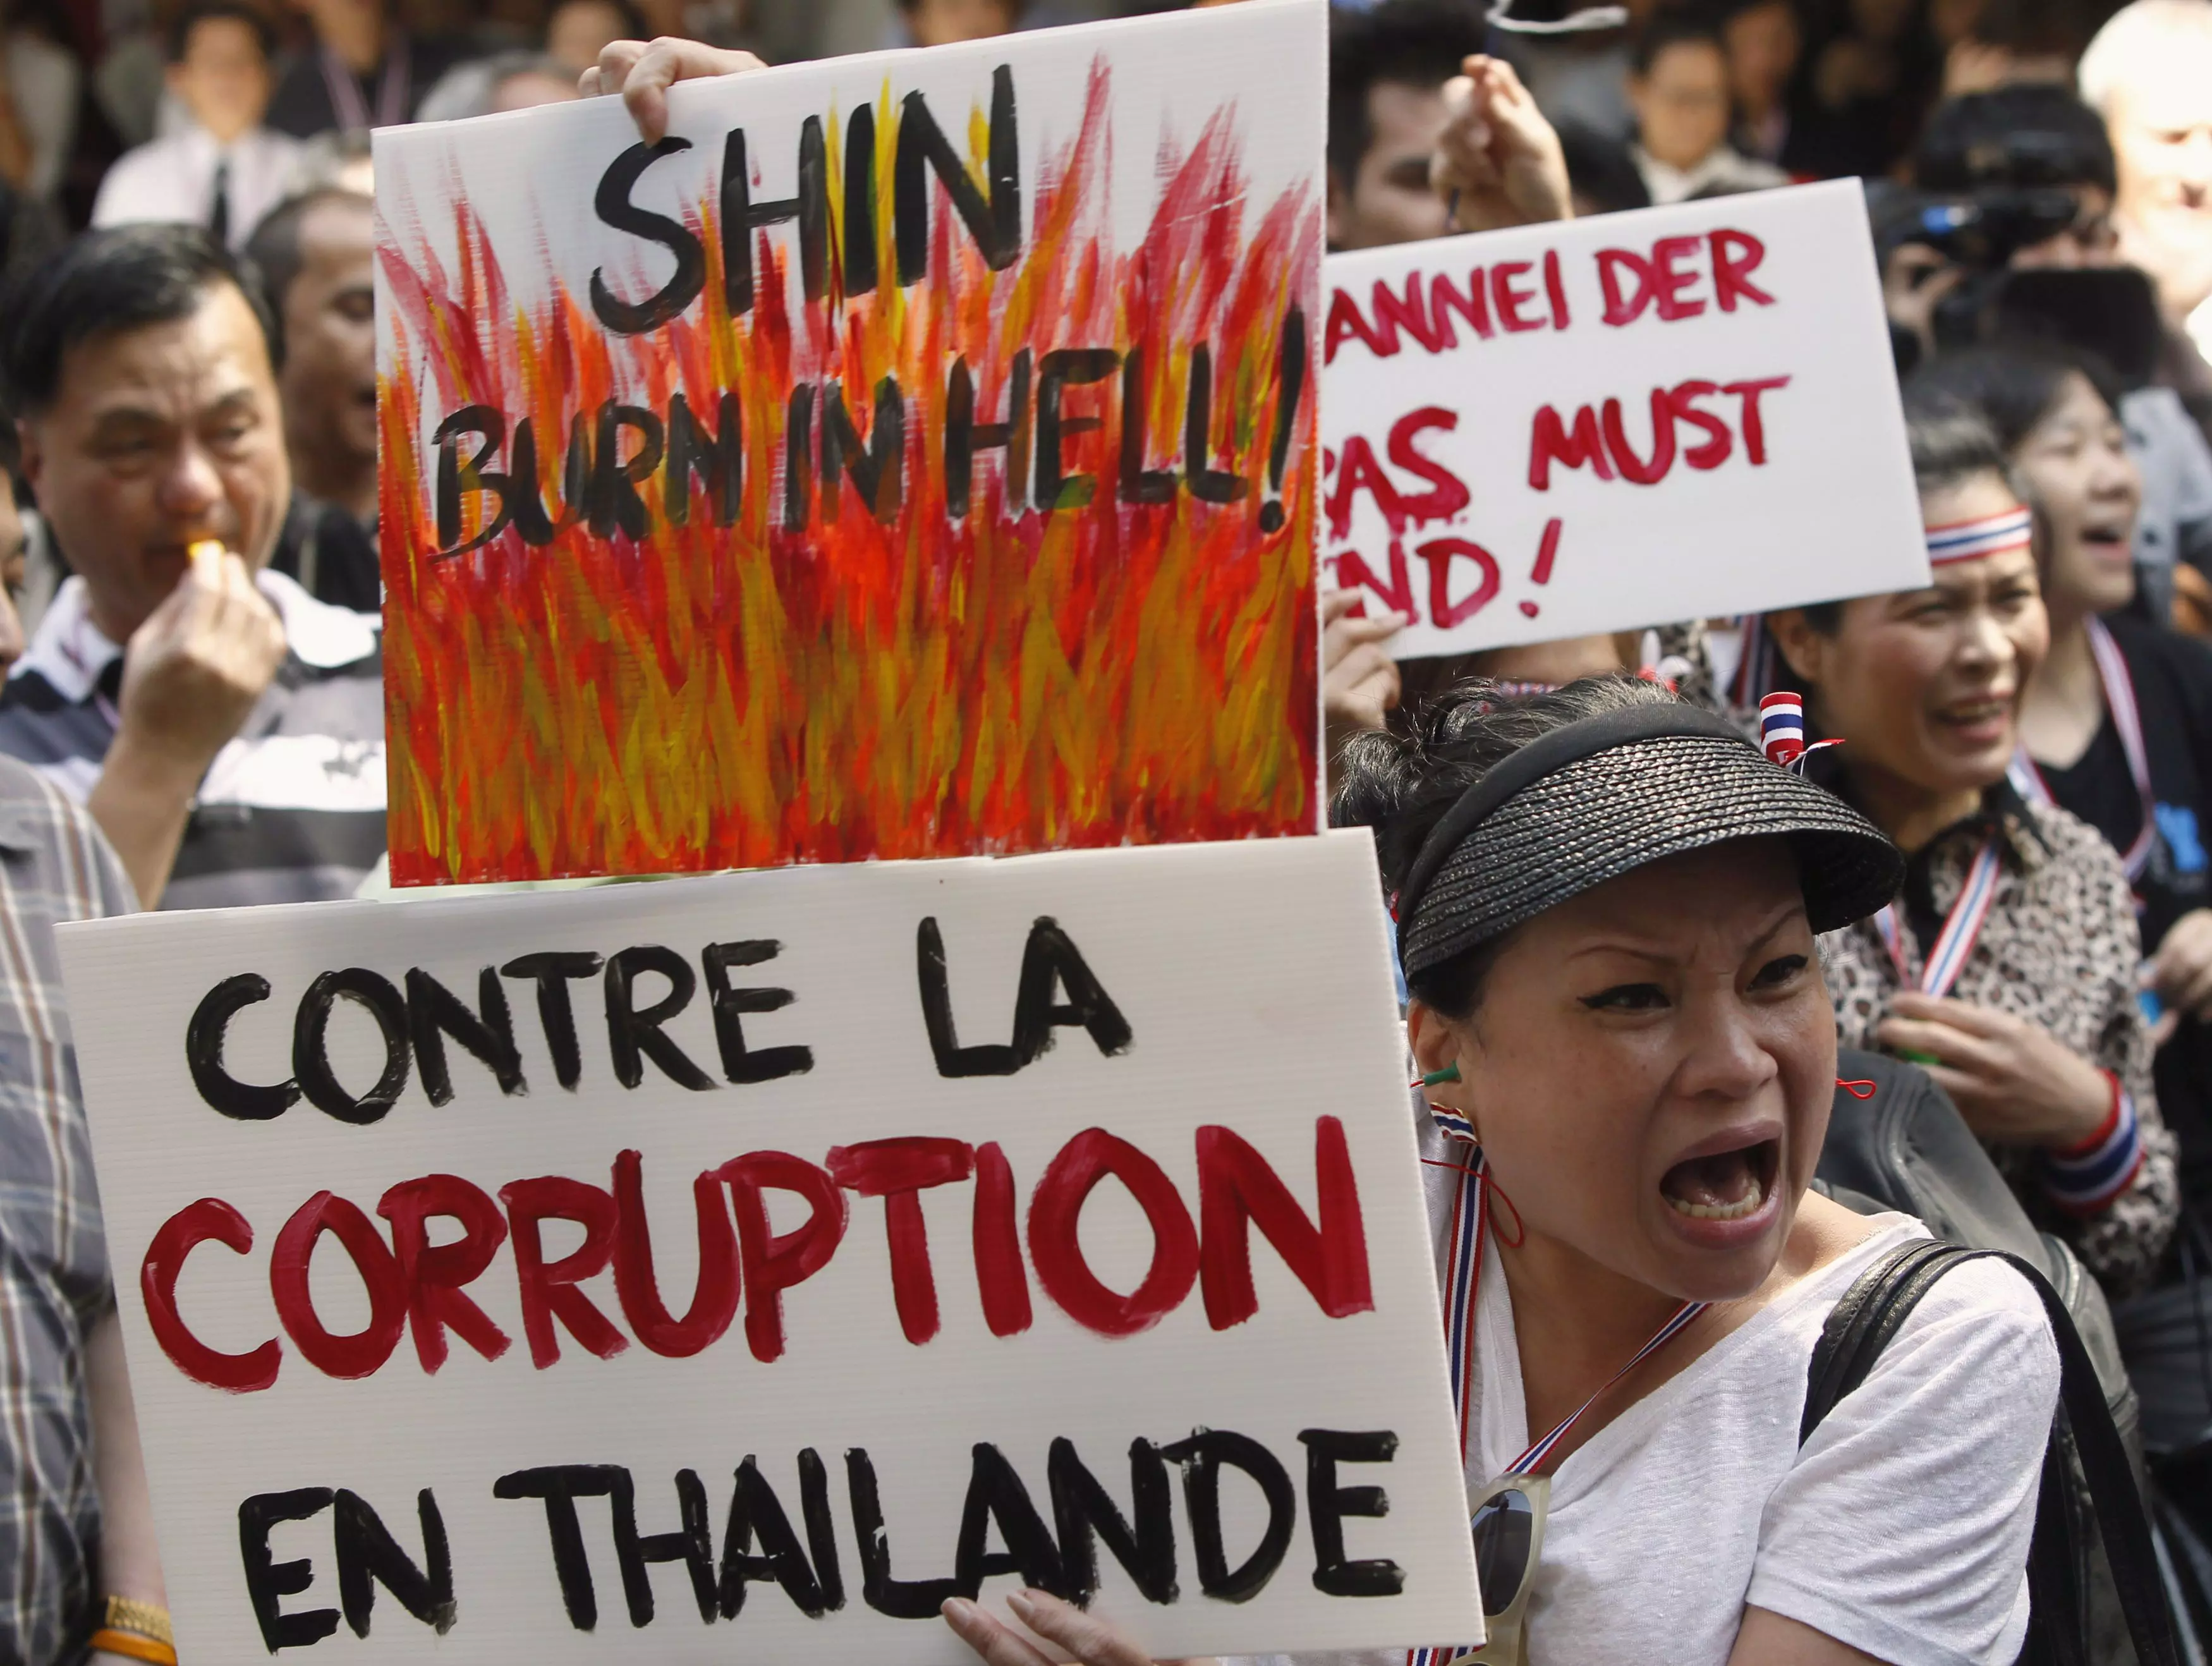 המפגינים טוענים שראשת ממשלת תאילנד היא "בובה" של אחיה, ראש הממשלה המודח